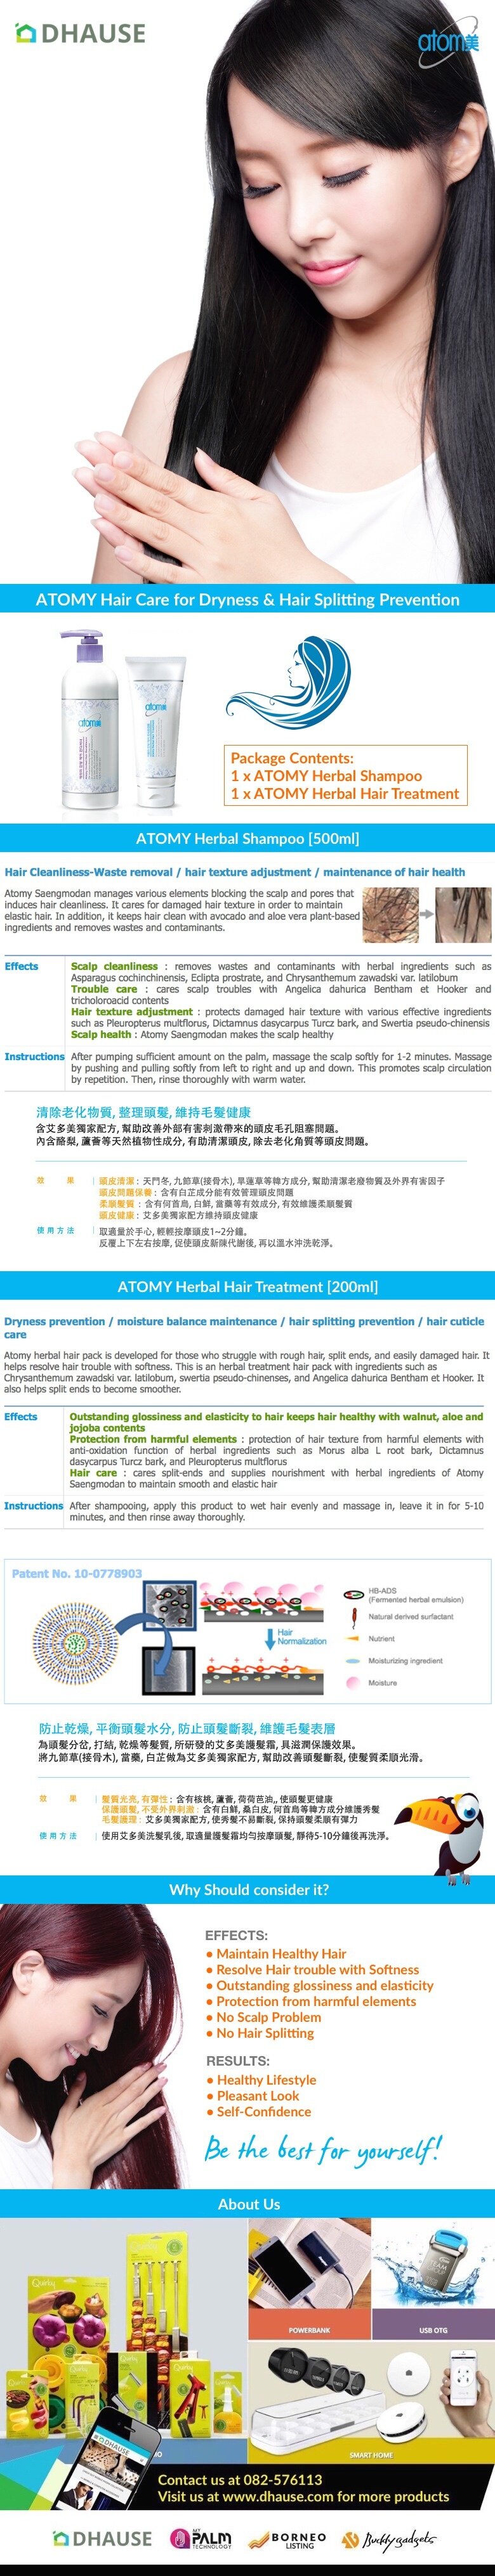 ATOMY Hair Care for Dryness & Hair Splitting Prevention